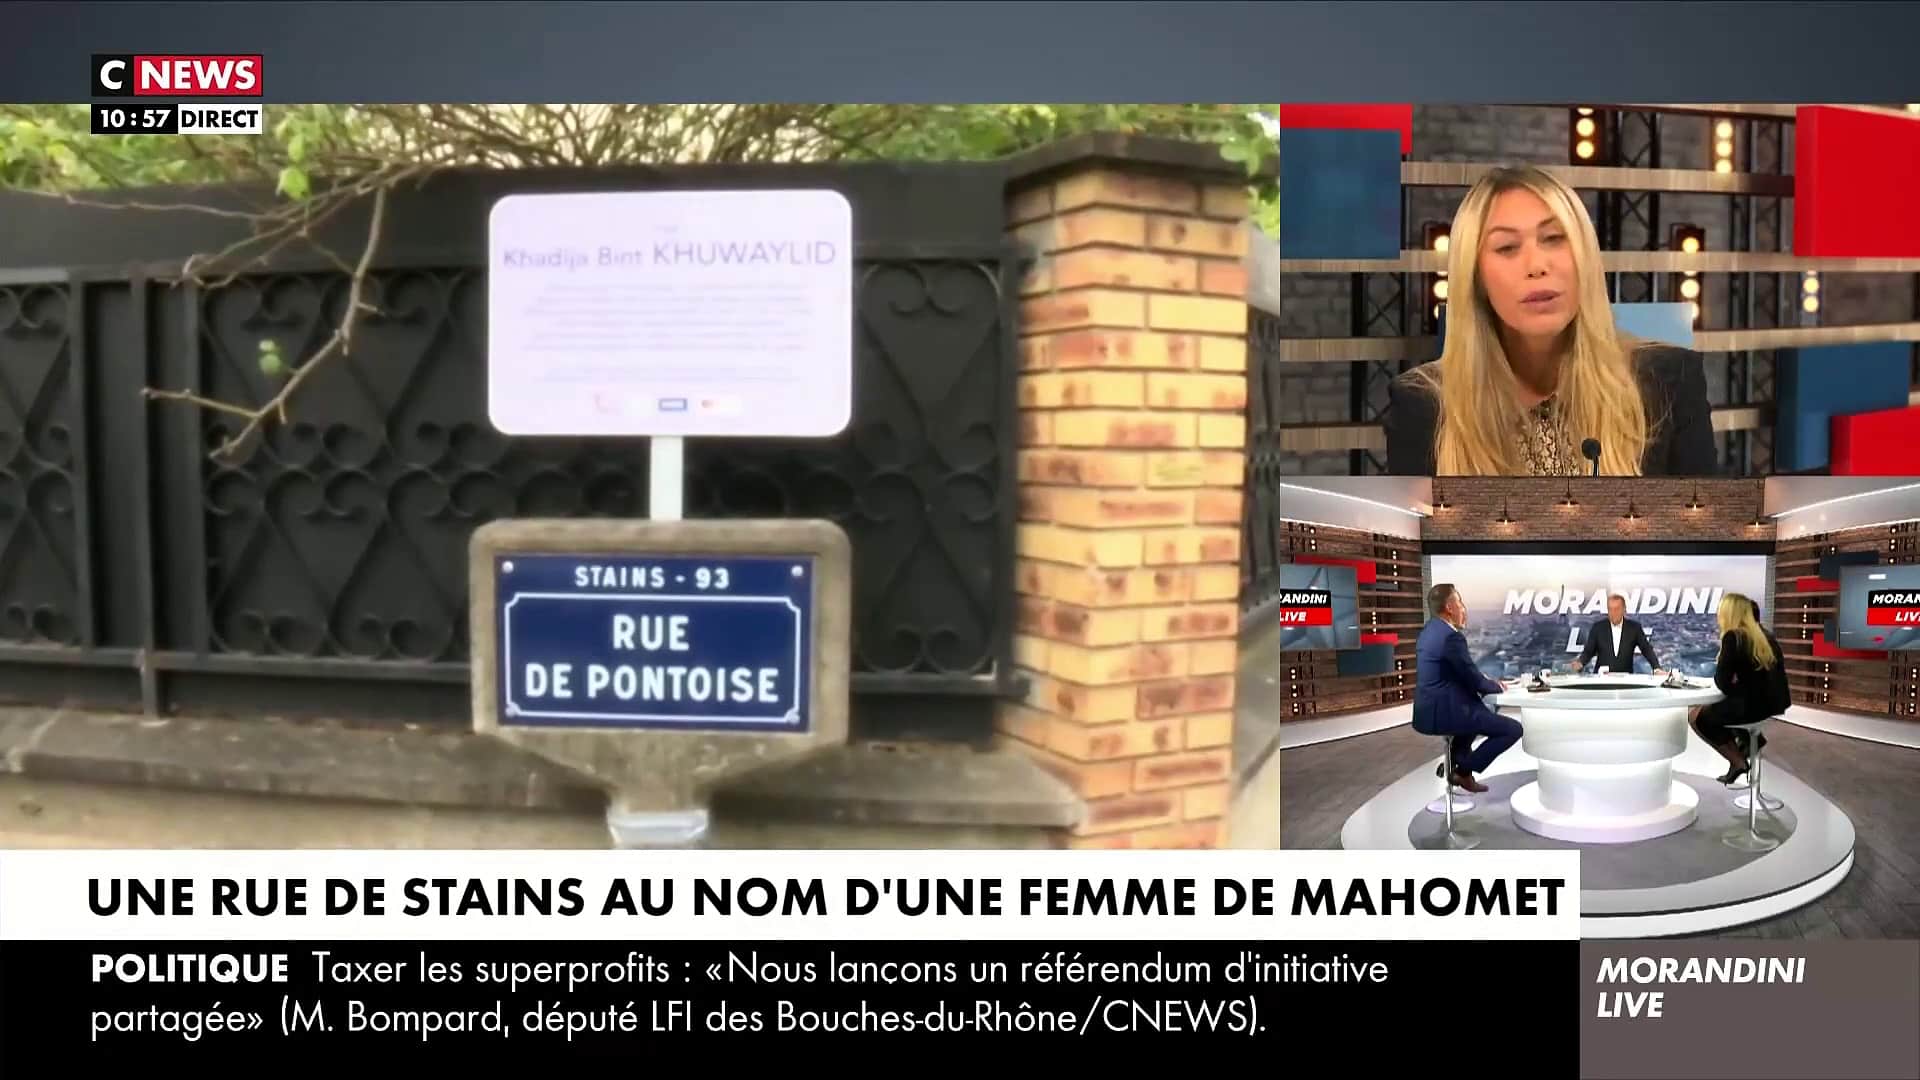 Seine-Saint-Denis. Le conseil municipal communiste de Stains dénonce les « délinquants de souche », « honte de la France » [Vidéo]